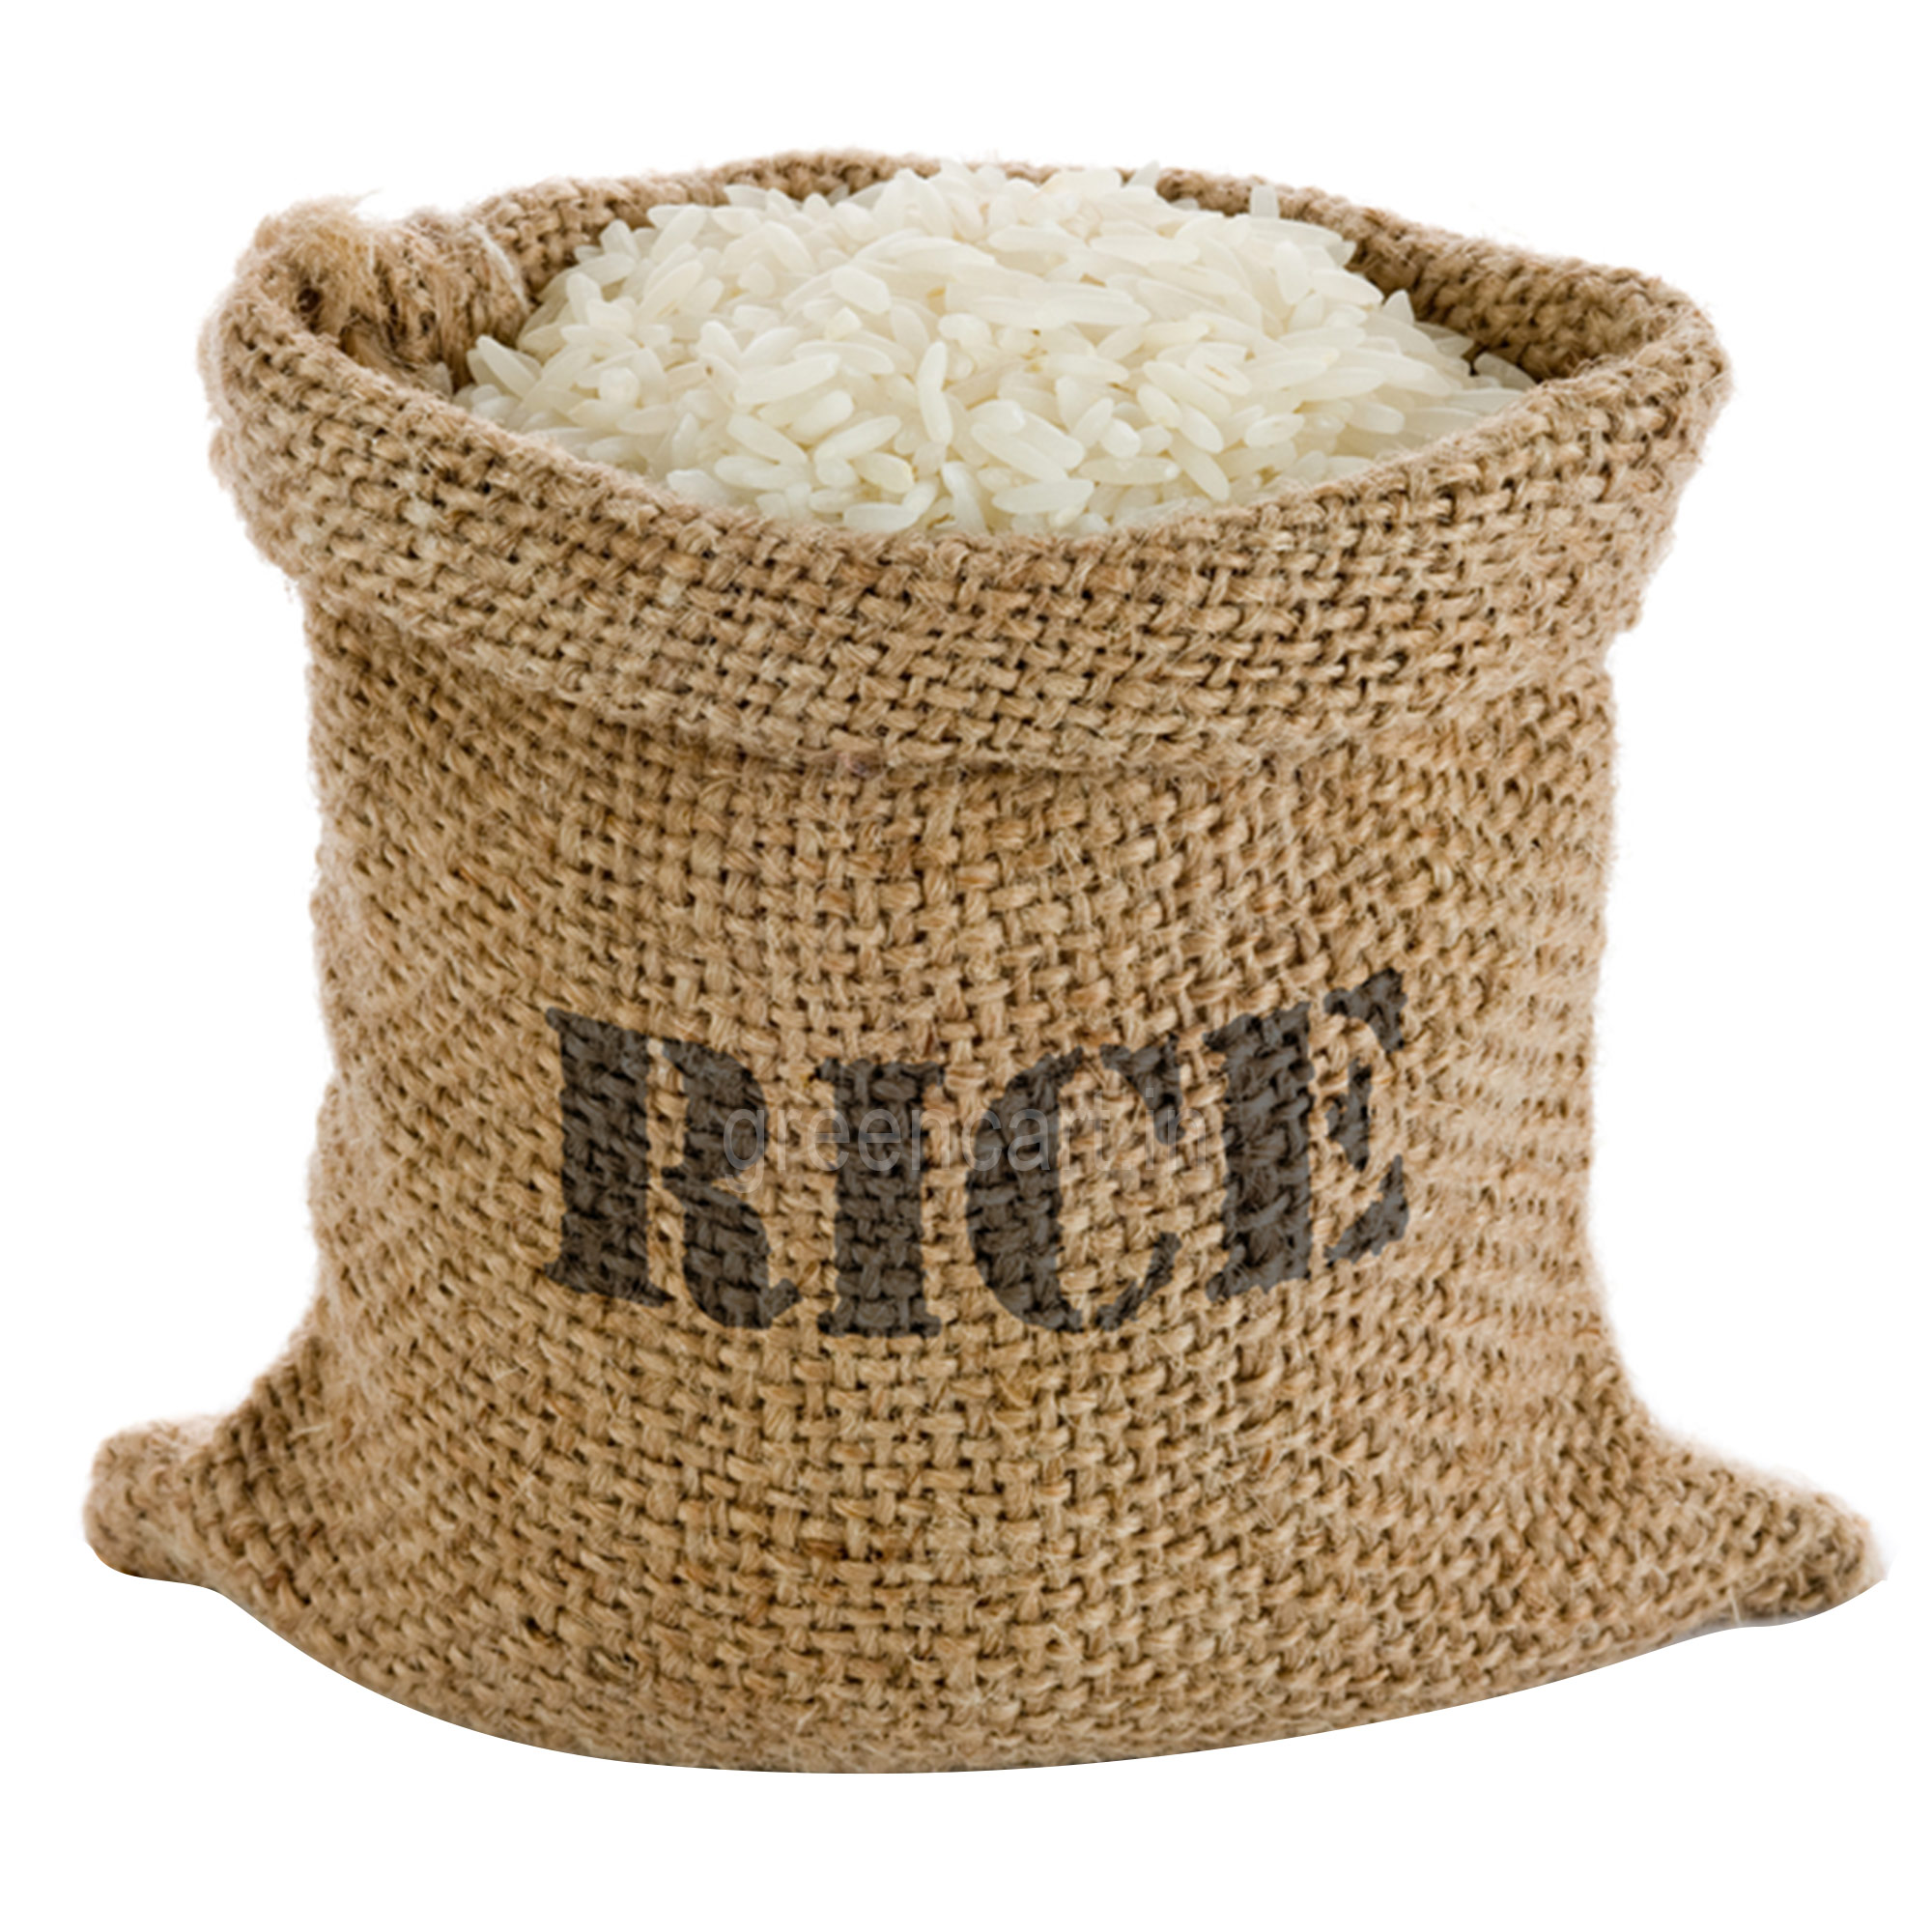 Big rice bag, Rice, Bag, Fert